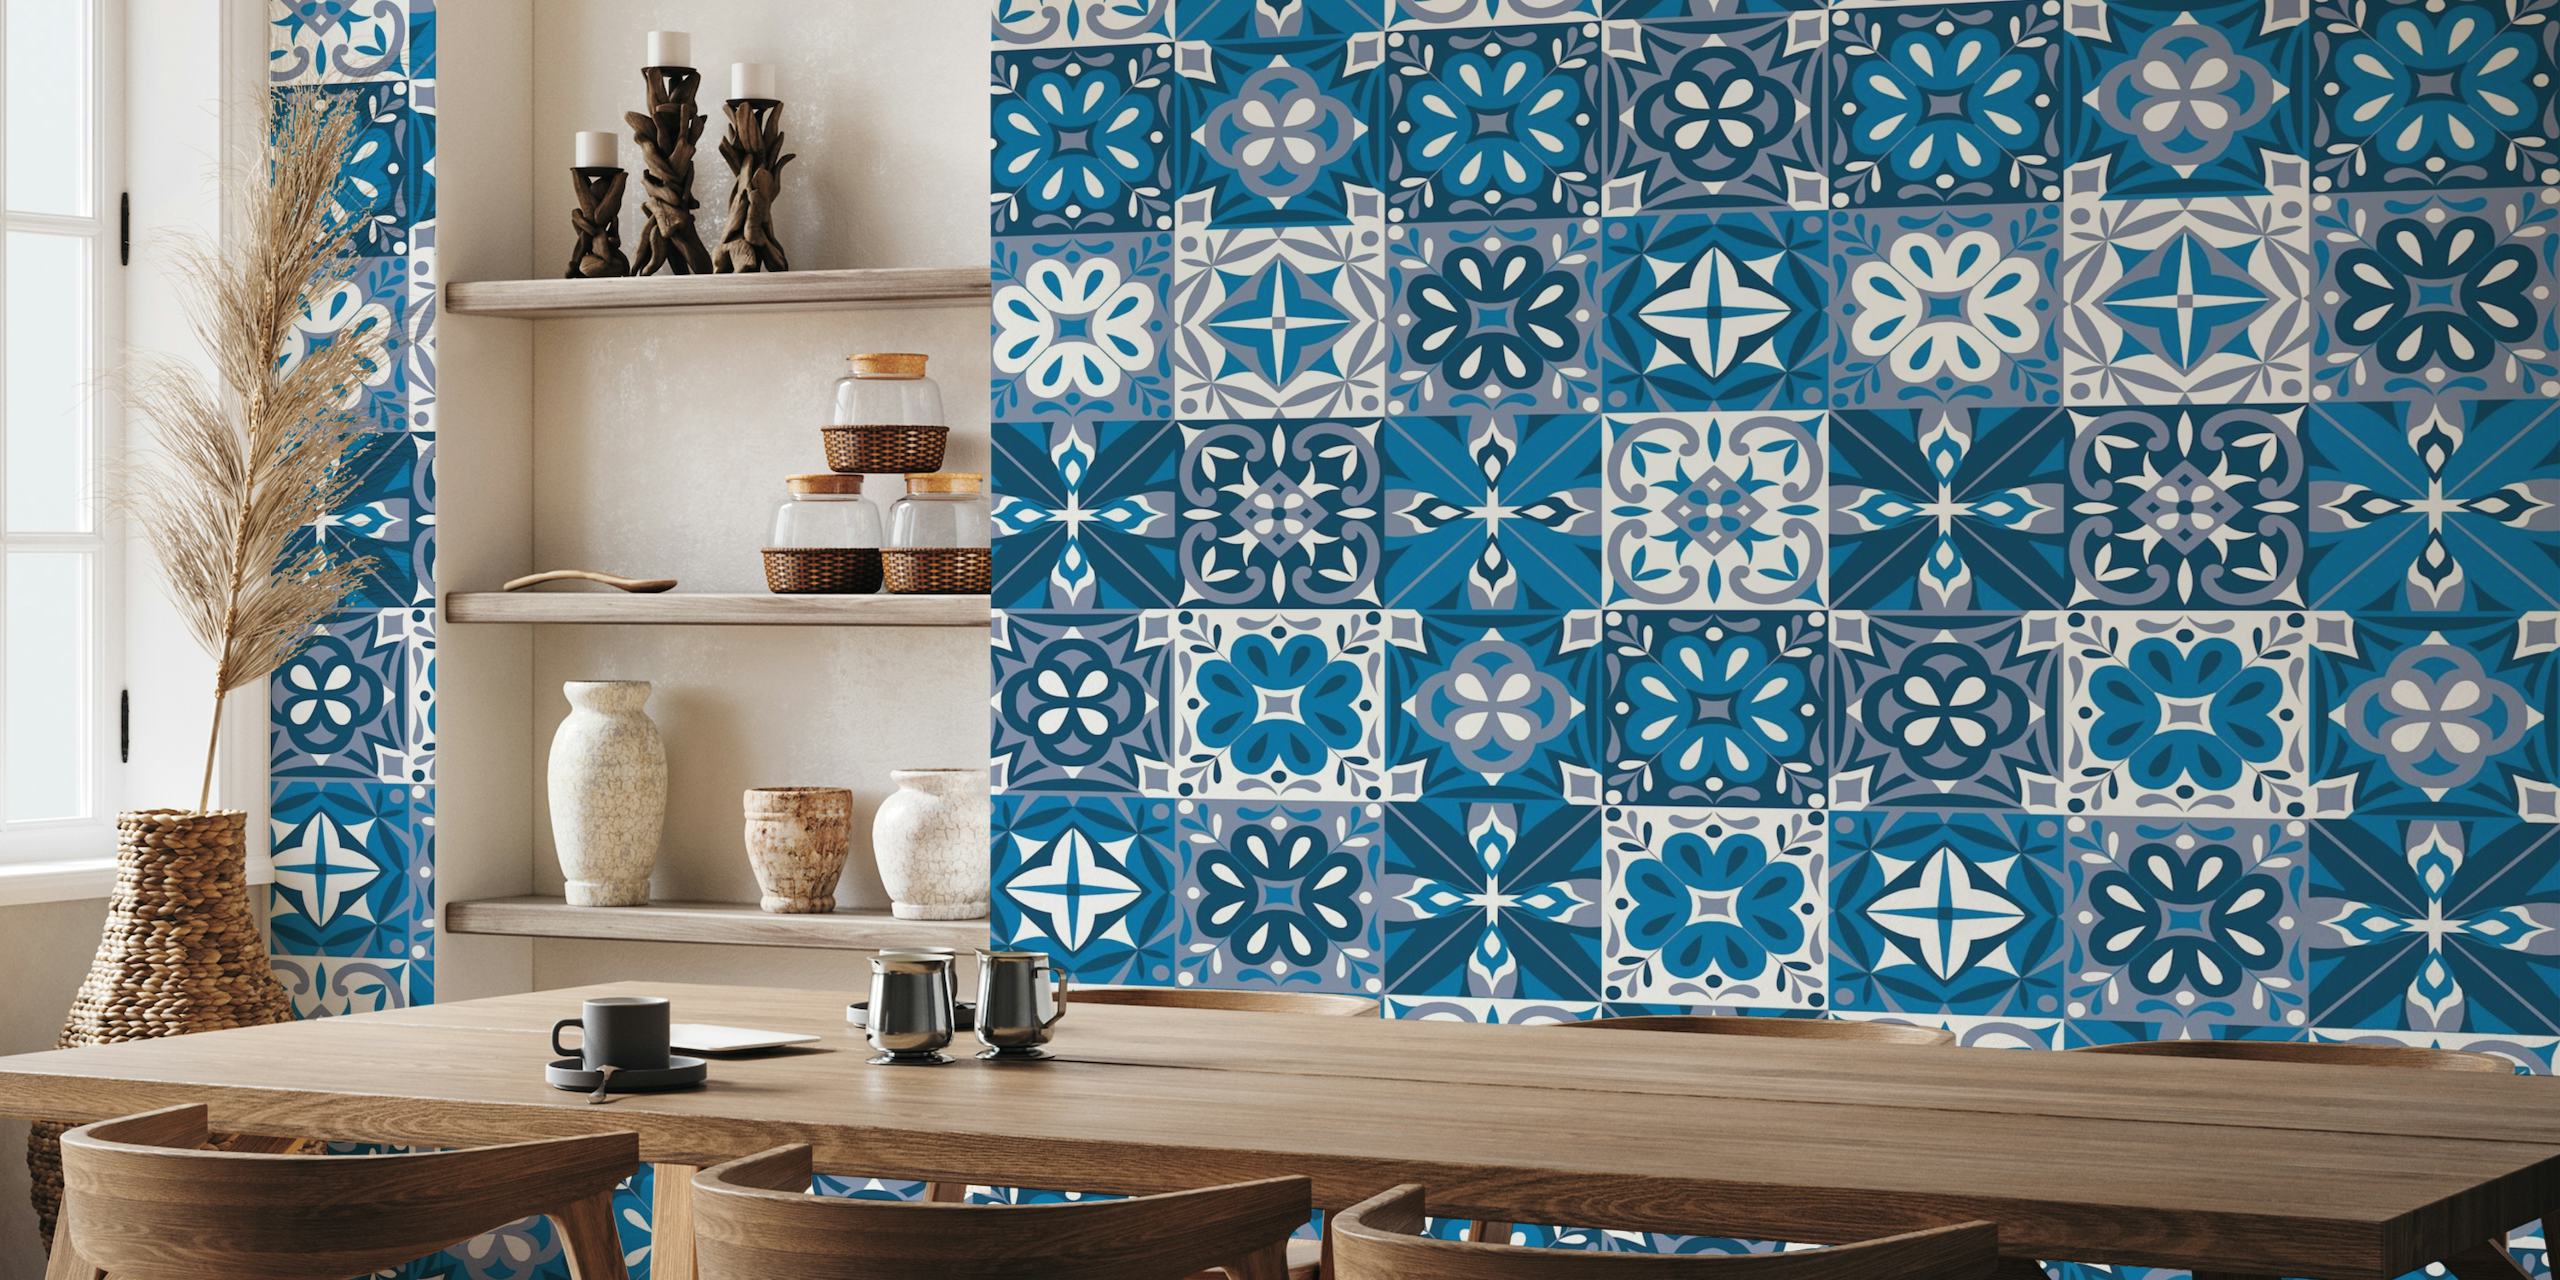 Uzorak portugalske azulejo pločice u plavoj i bijeloj boji na zidnom zidu